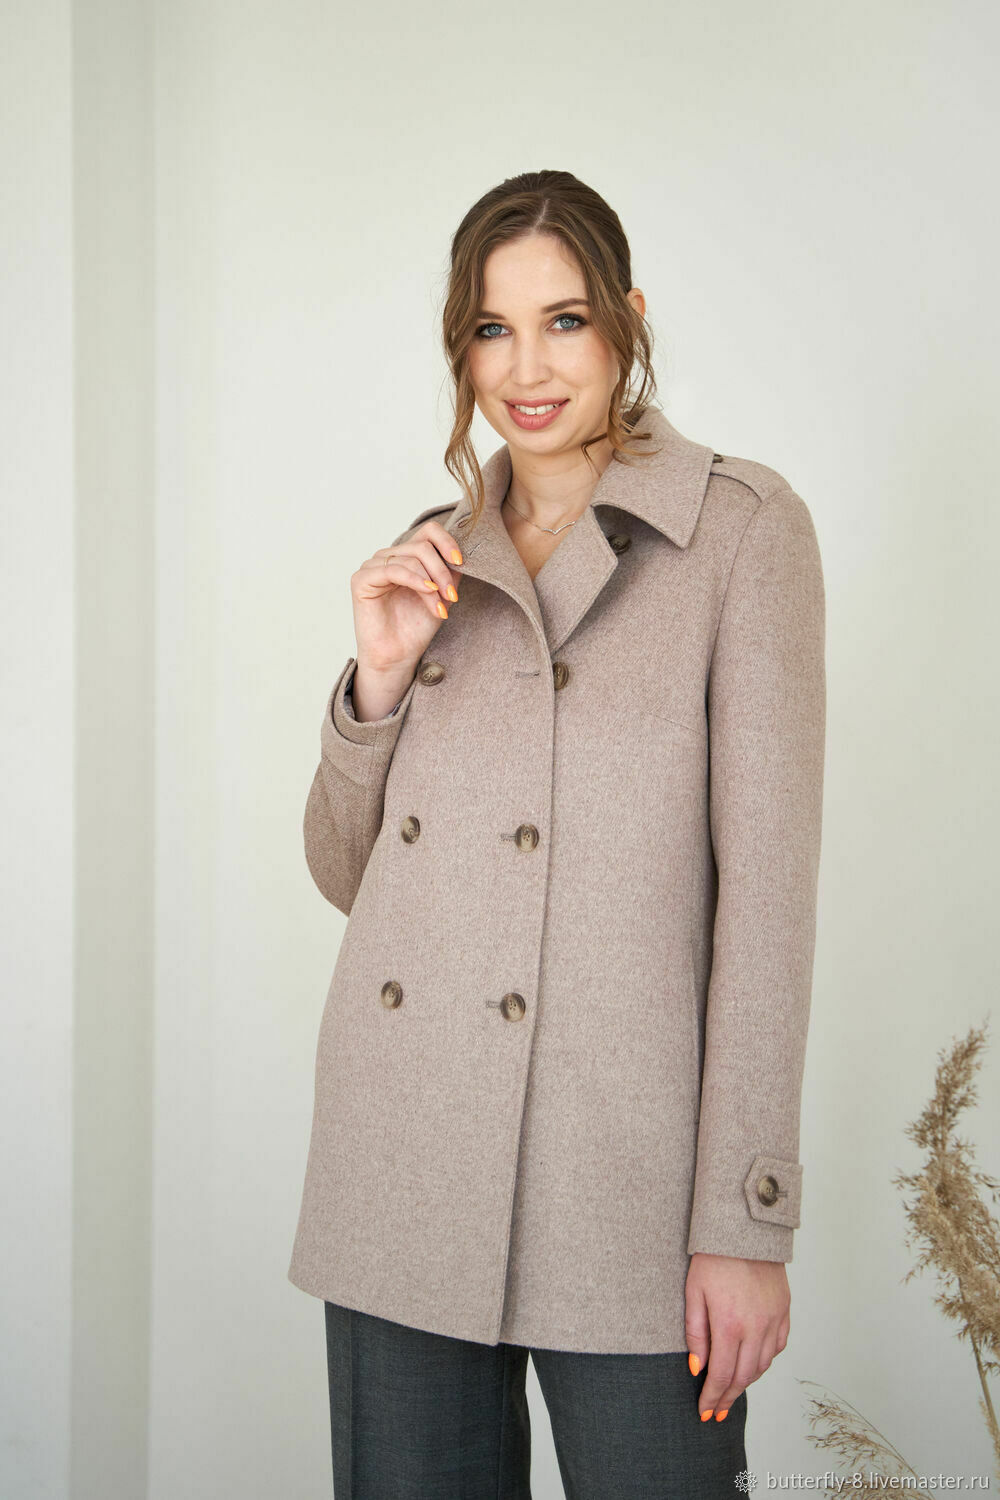 Купить Женские пальто в интернет-магазине Малина недорого